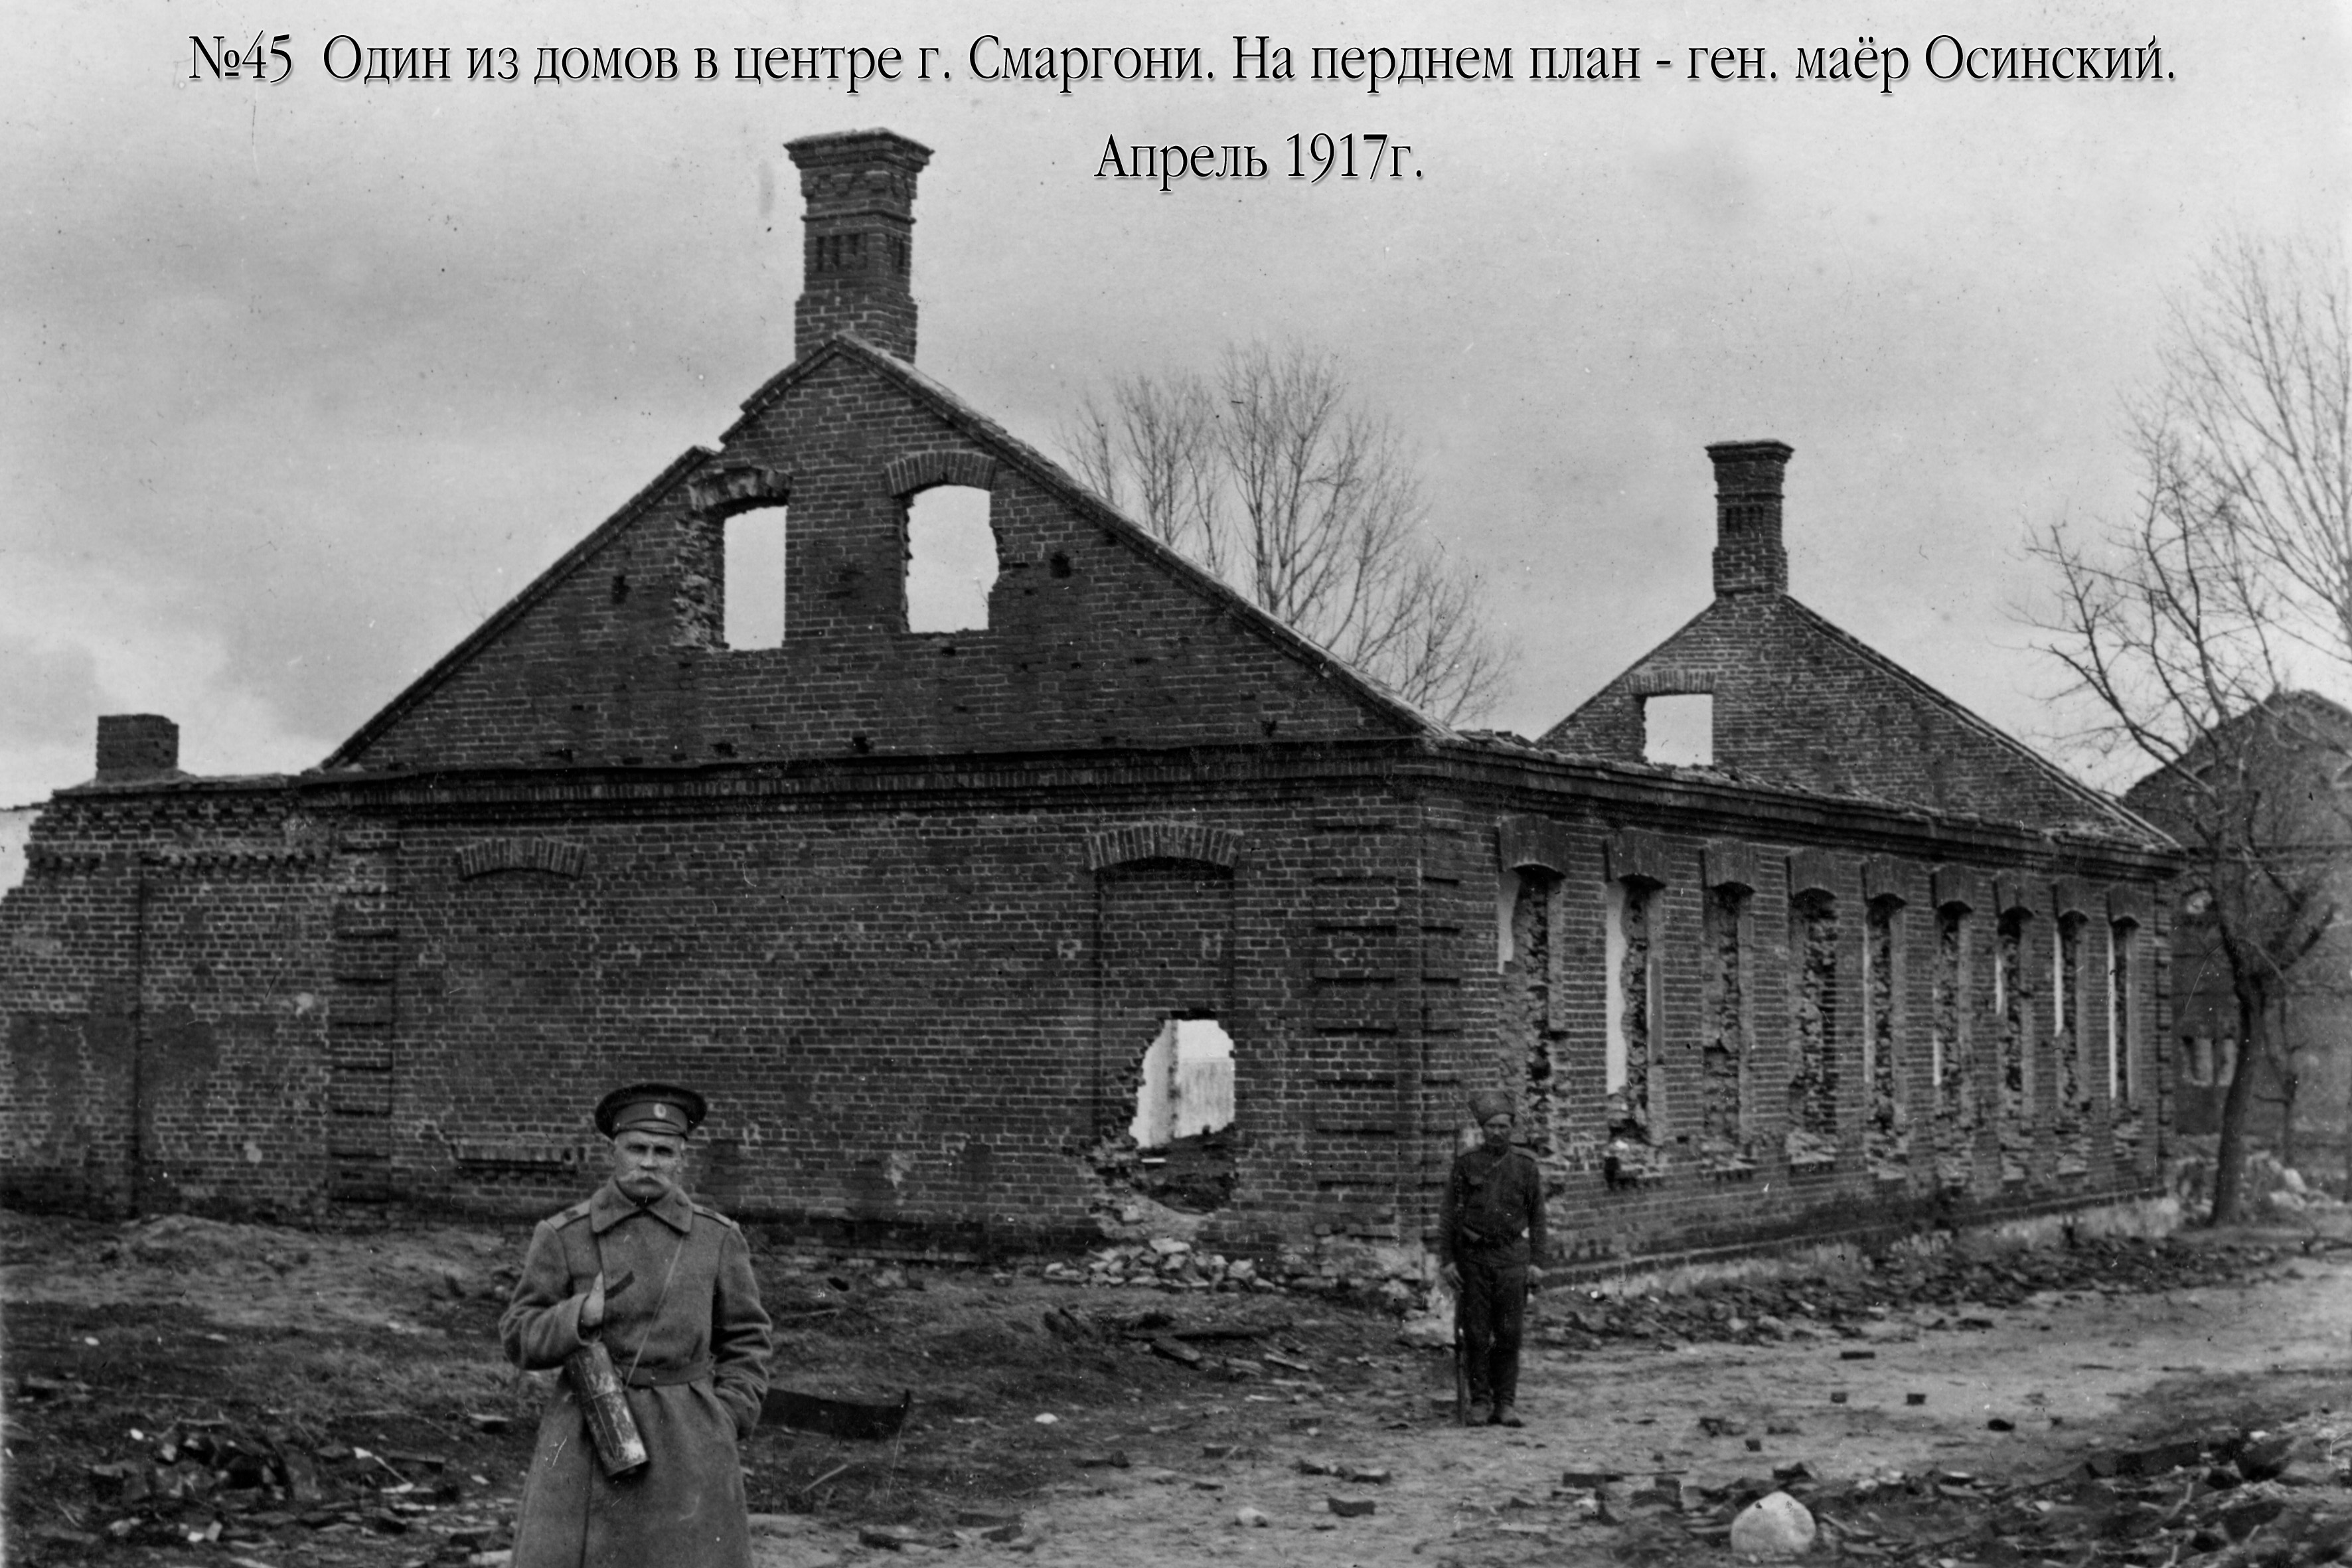 Generolas majoras A. A. Osinskis prie vieno iš Smurgainių centre sugriautų namų. 1917 m. balandžio mėn.